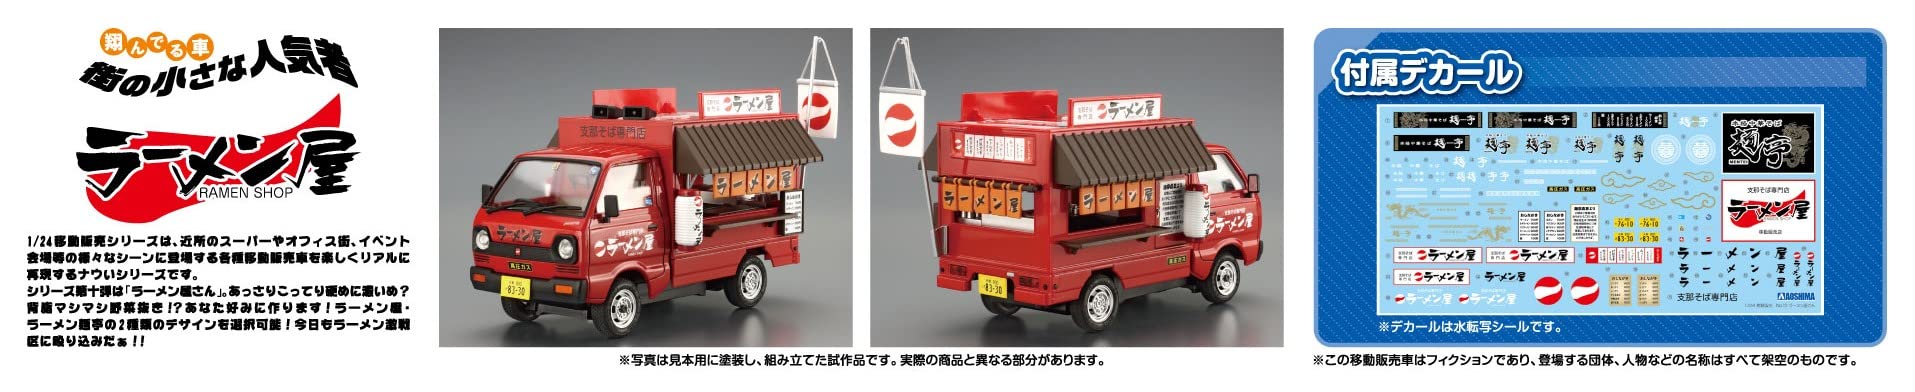 AOSHIMA 1/24 Mobile Sales Series No.10 Ramen Shop Plastic Model car Ra-men NEW_6